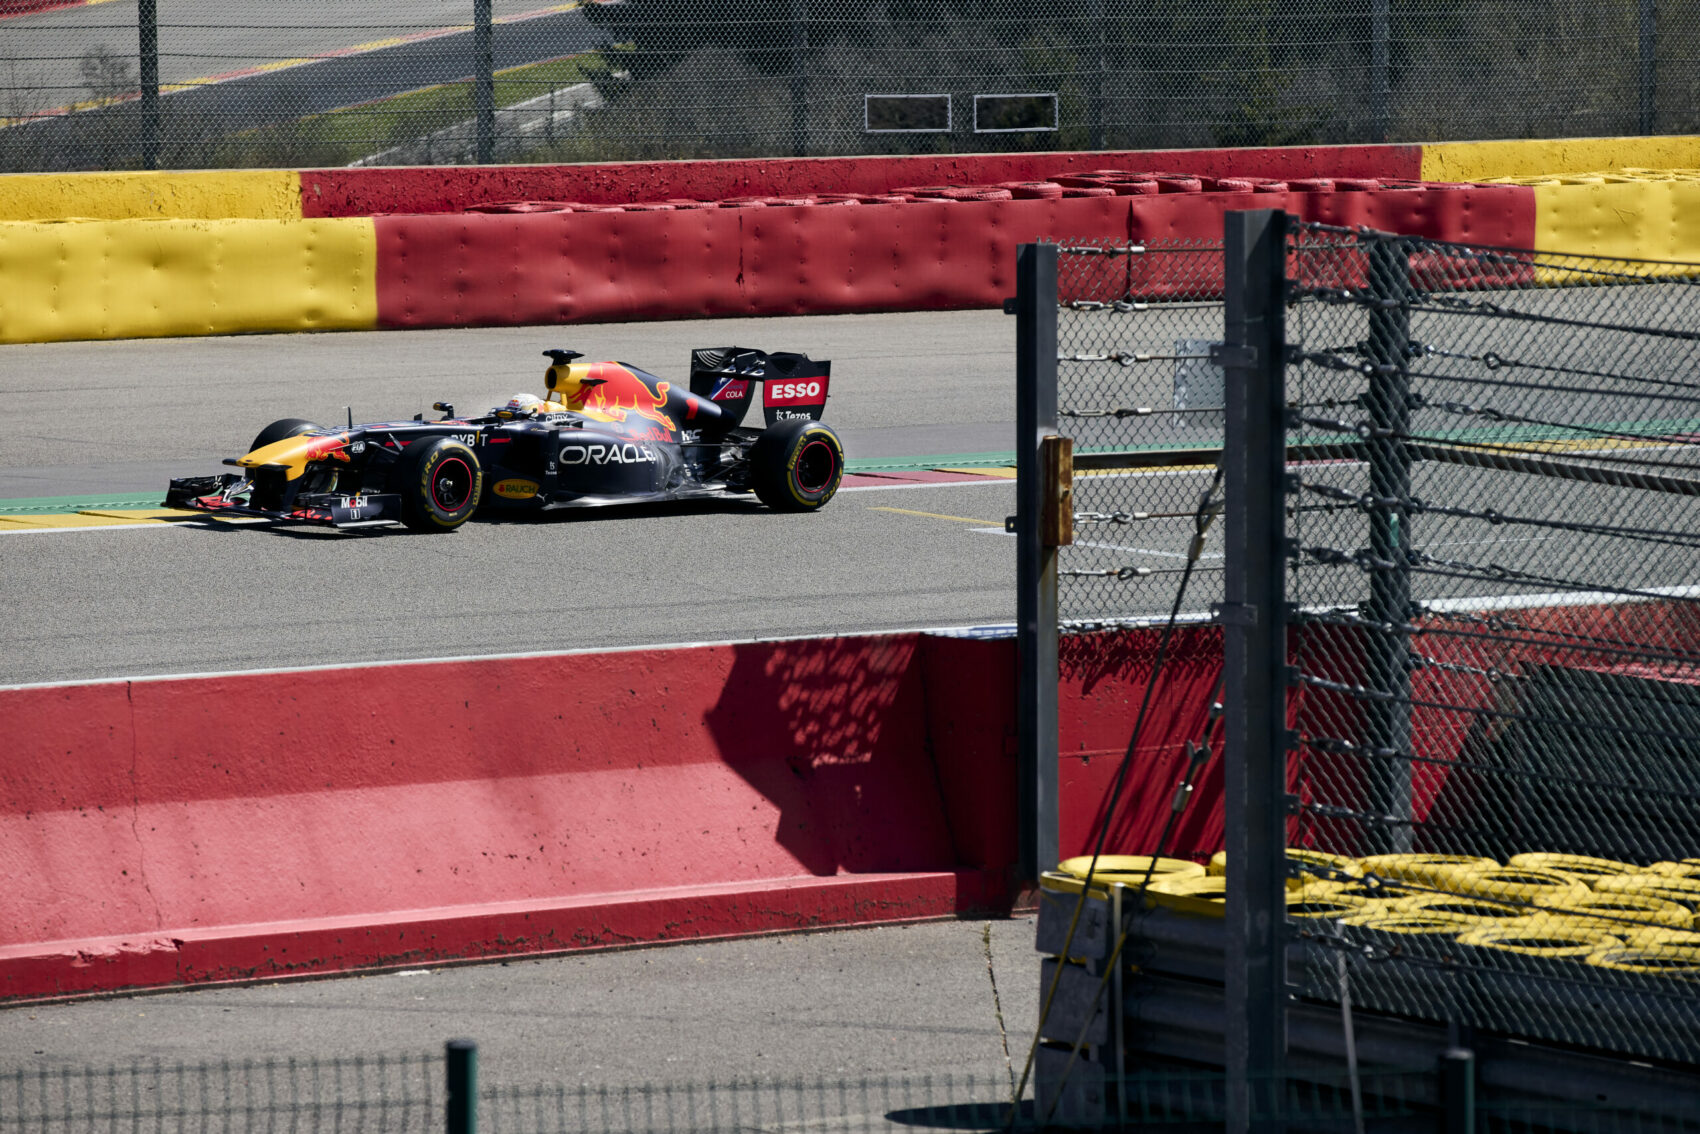 Max Verstappen, Spa, Red Bull RB7